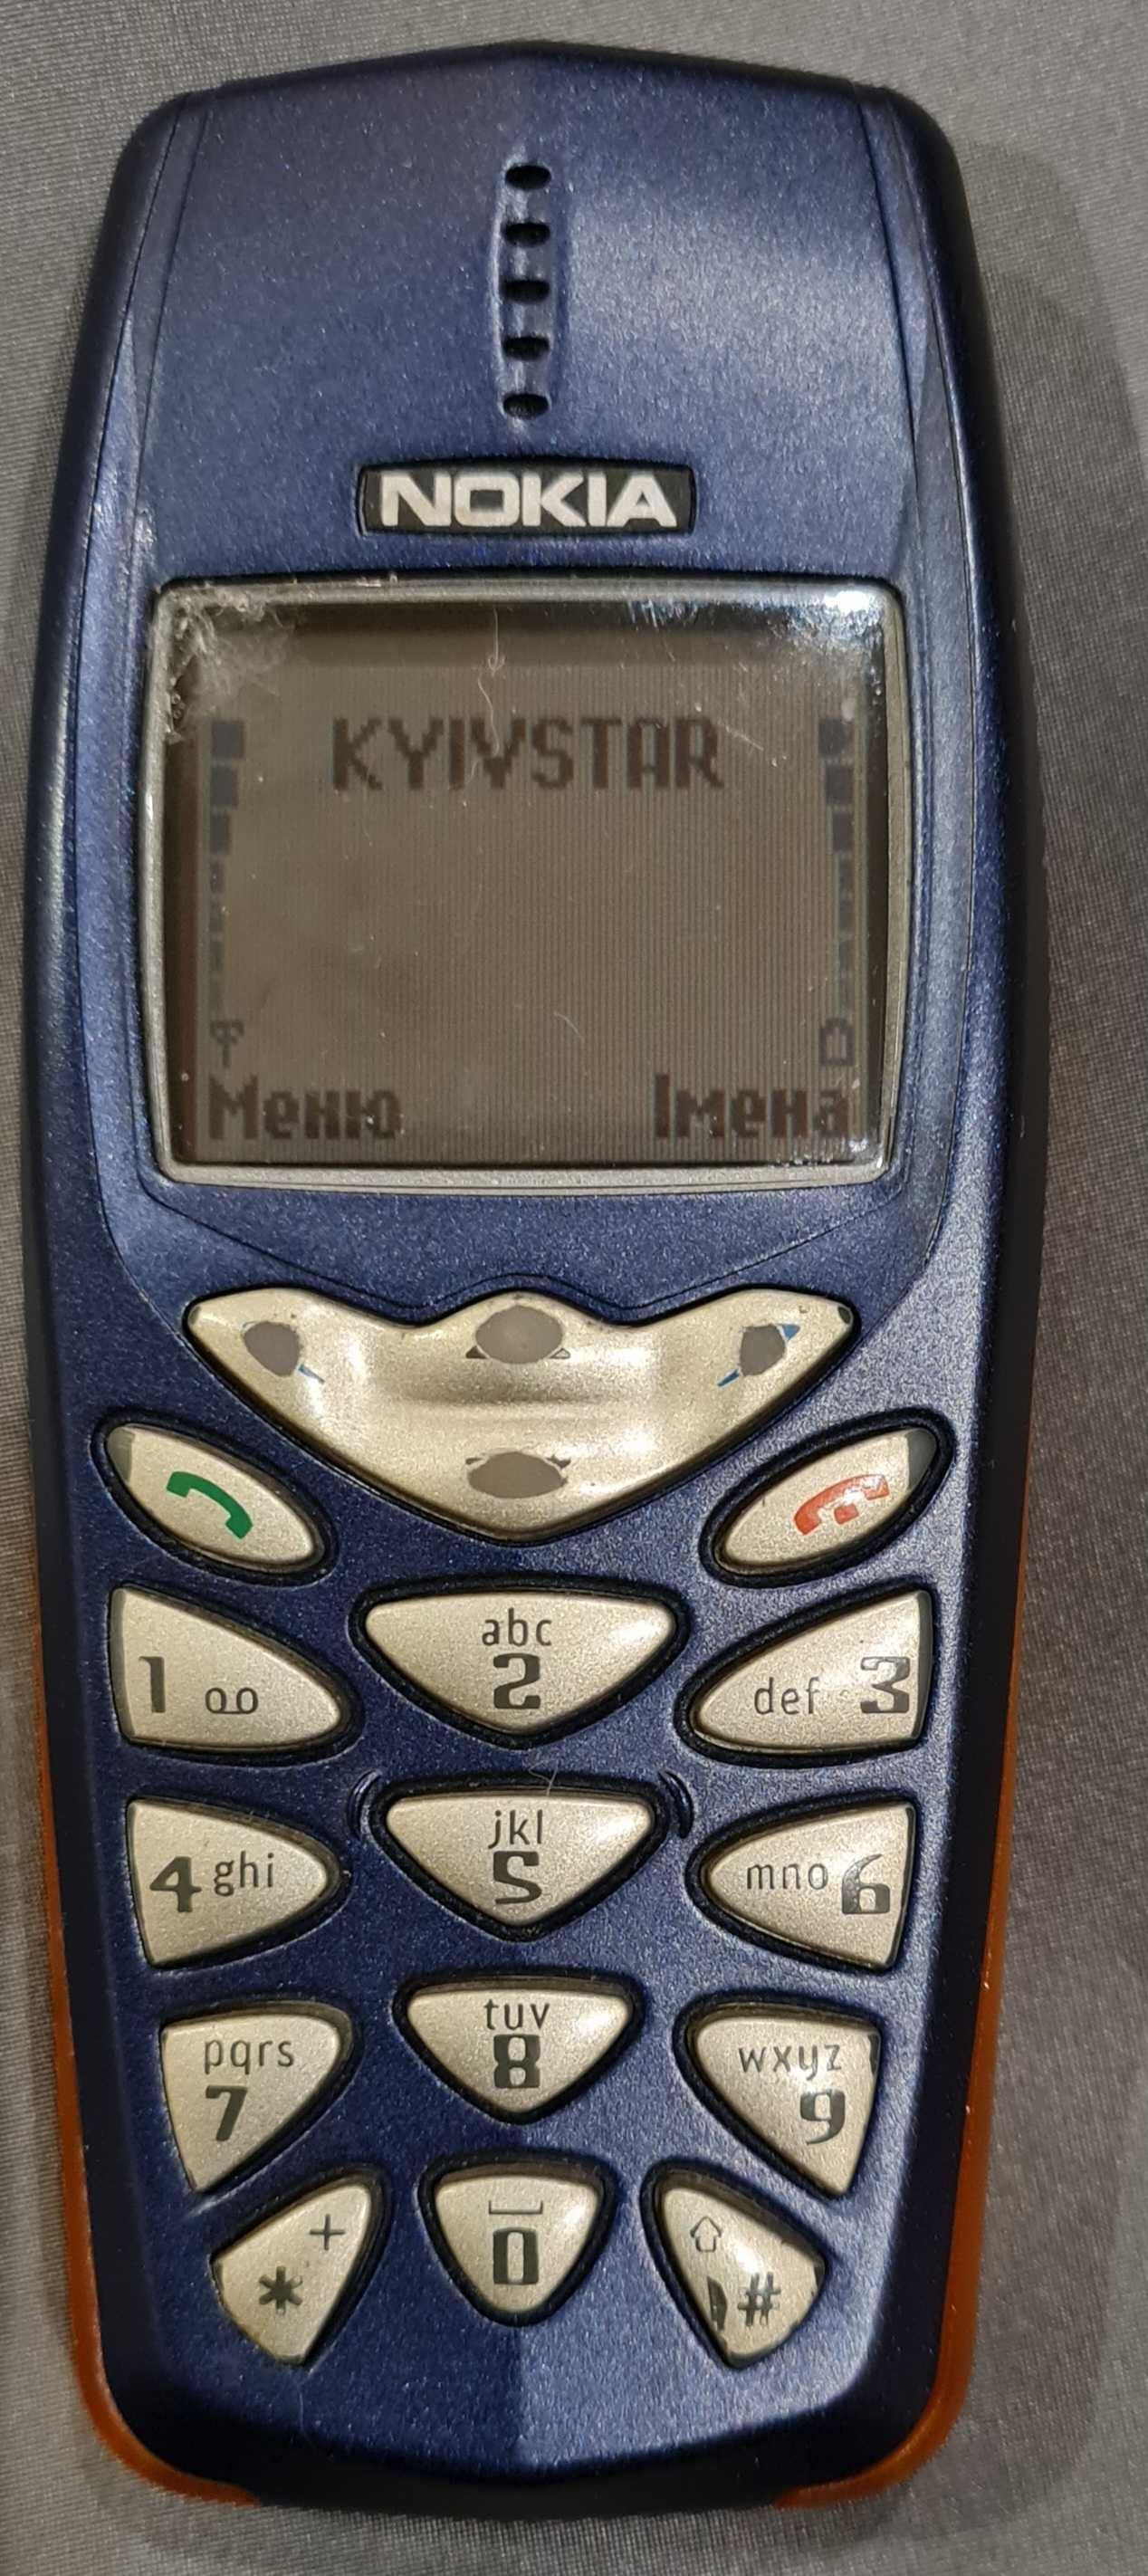 Nokia 3510i Germany